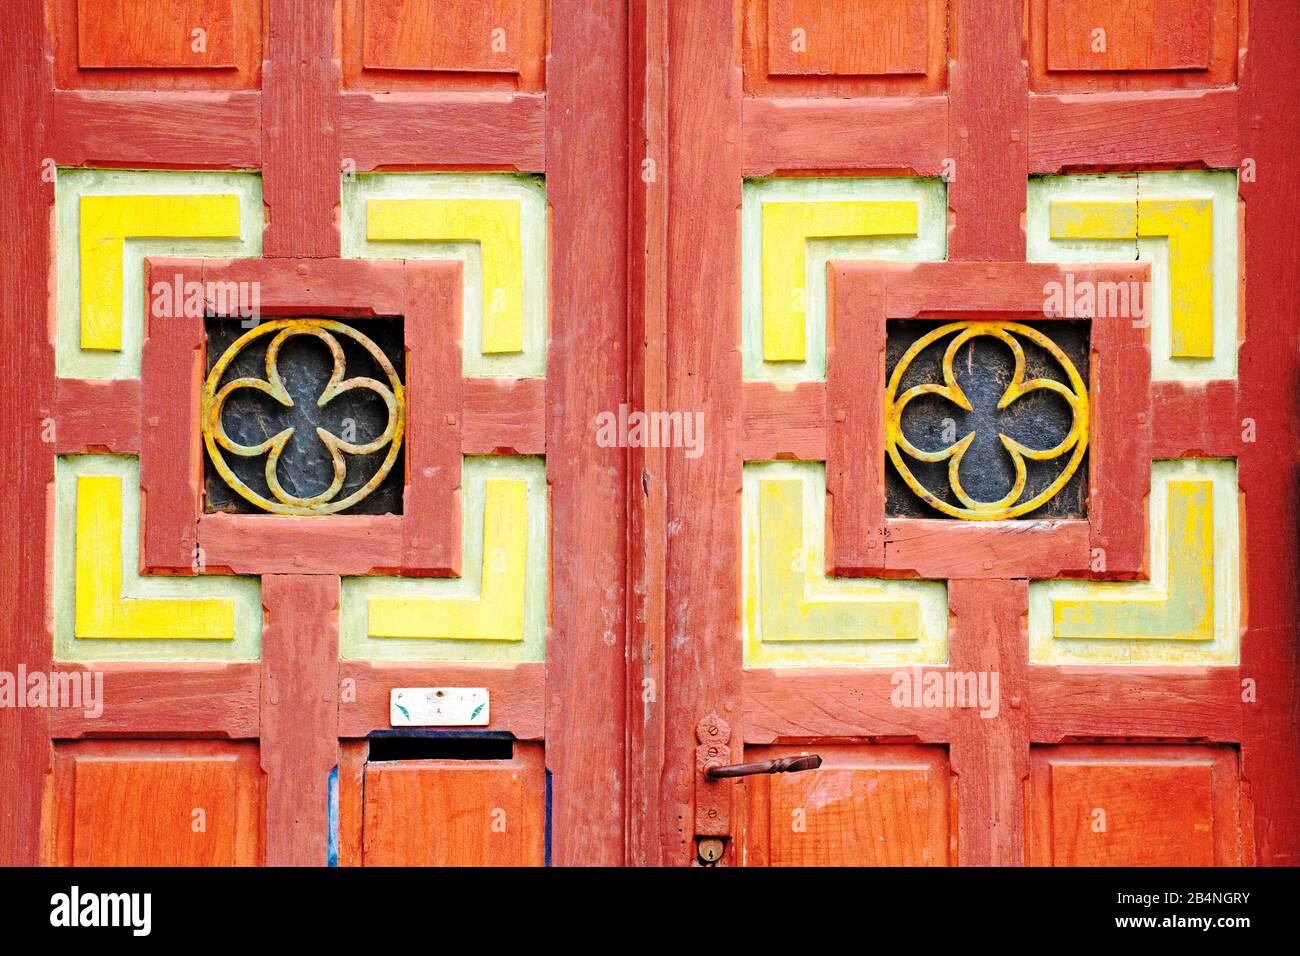 Porte en bois rouge accrocheuse avec panneaux de cassettes et fleur stylisée. Tréguier est une commune française, située dans le département des Côtes-d'Armor en Bretagne. Tréguier est la capitale historique du Trégor. Banque D'Images